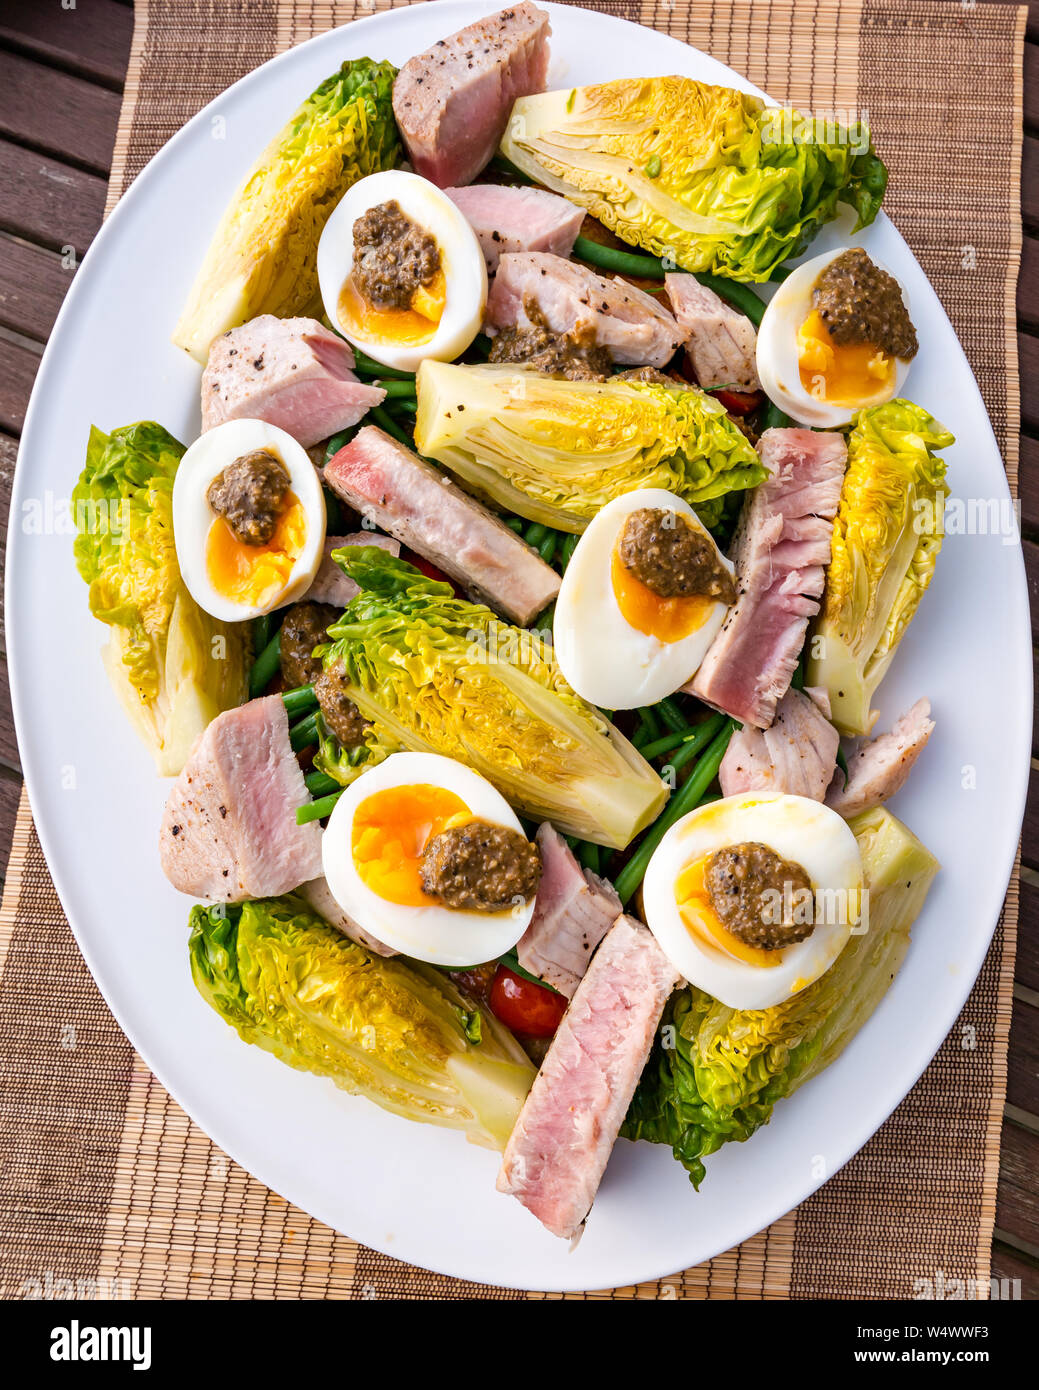 Version von Salat Nicoise auf weiße Platte. Hart gekochte Eier und Olivenöl Dressing, Baby gem Salat, gekochten Kartoffeln & Thunfisch Steak Slices Stockfoto